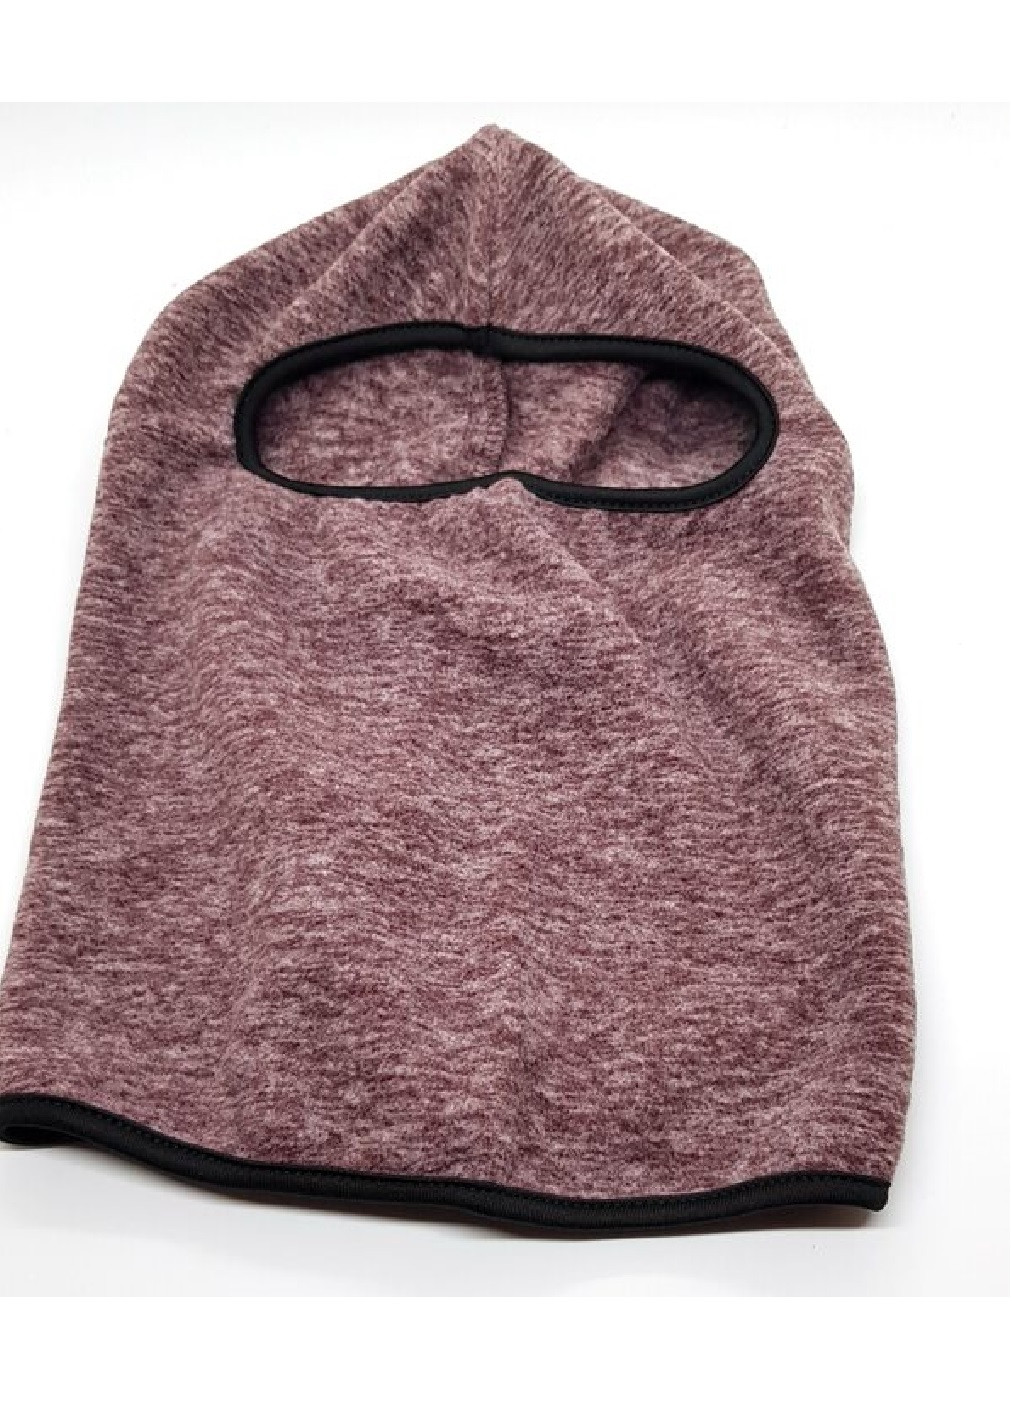 Unbranded утепленная маска флисовая балаклава зимний бафф шарф подшлемник шапка (474025-prob) коричневая однотонный коричневый повседневный флис производство -